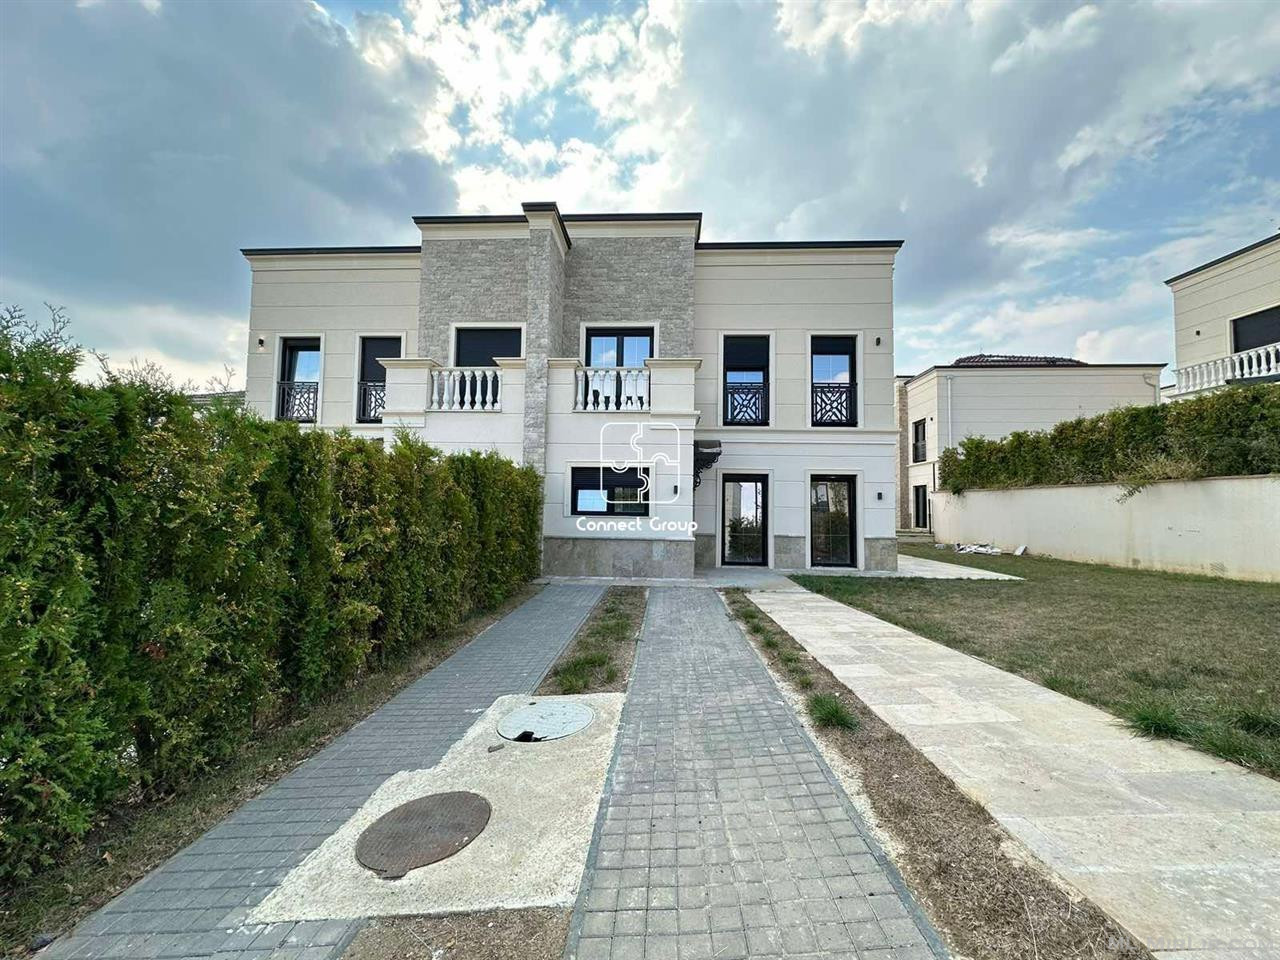 Shtëpia në #SHITJE në Zllatar në lagjen \"Royal Green Residen